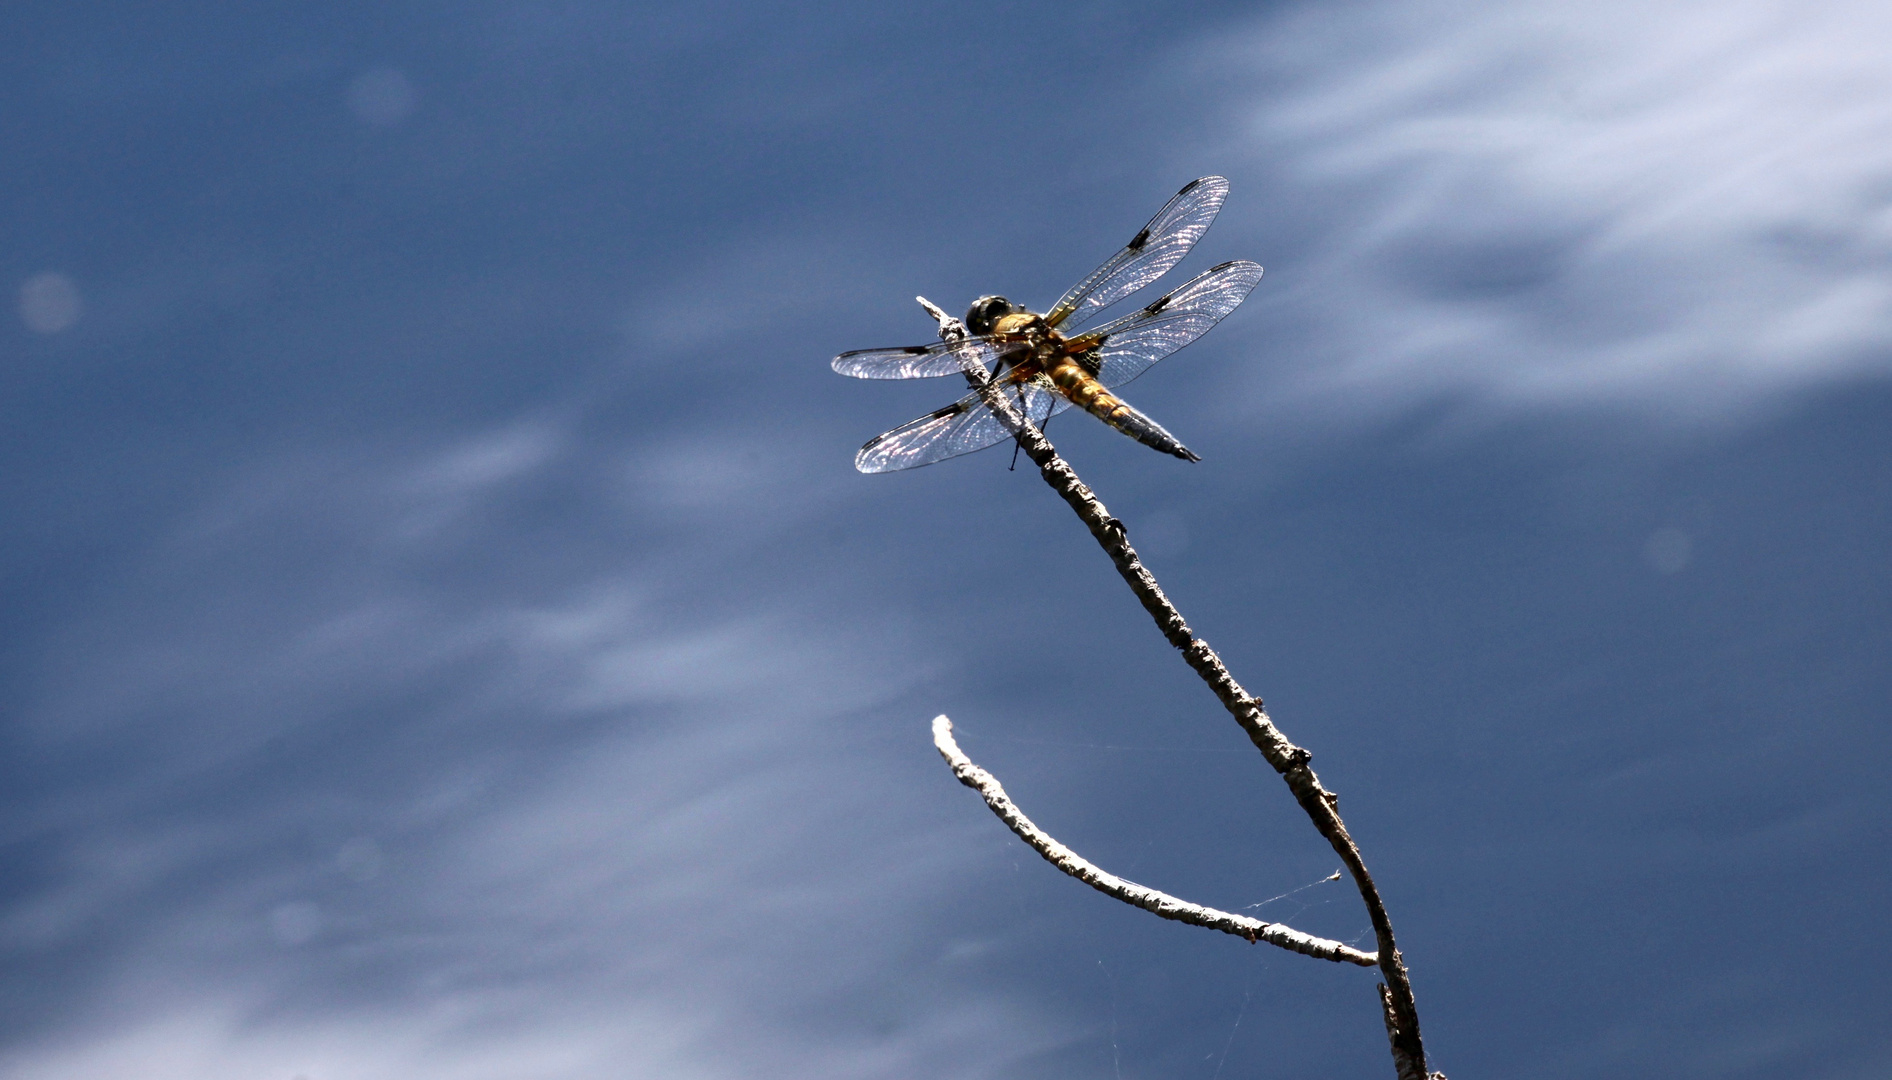 Vierfleck-Libelle mit Himmelsspiegelung im Moorsee